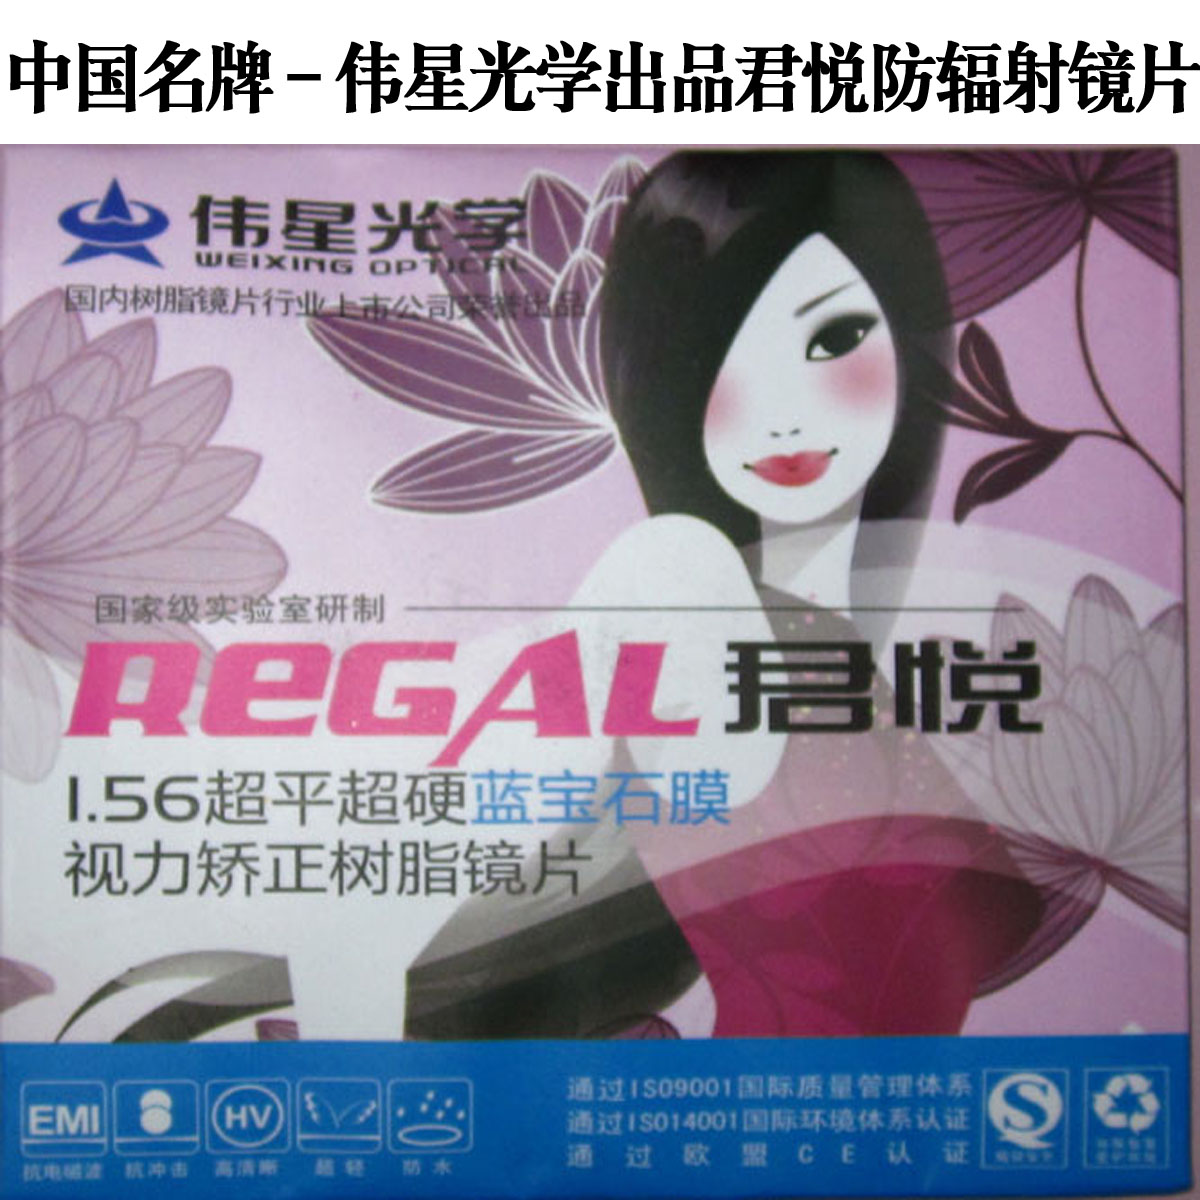 上海伟星1.56君悦蓝膜防辐射镜片-上市公司出品 国货顶级品牌